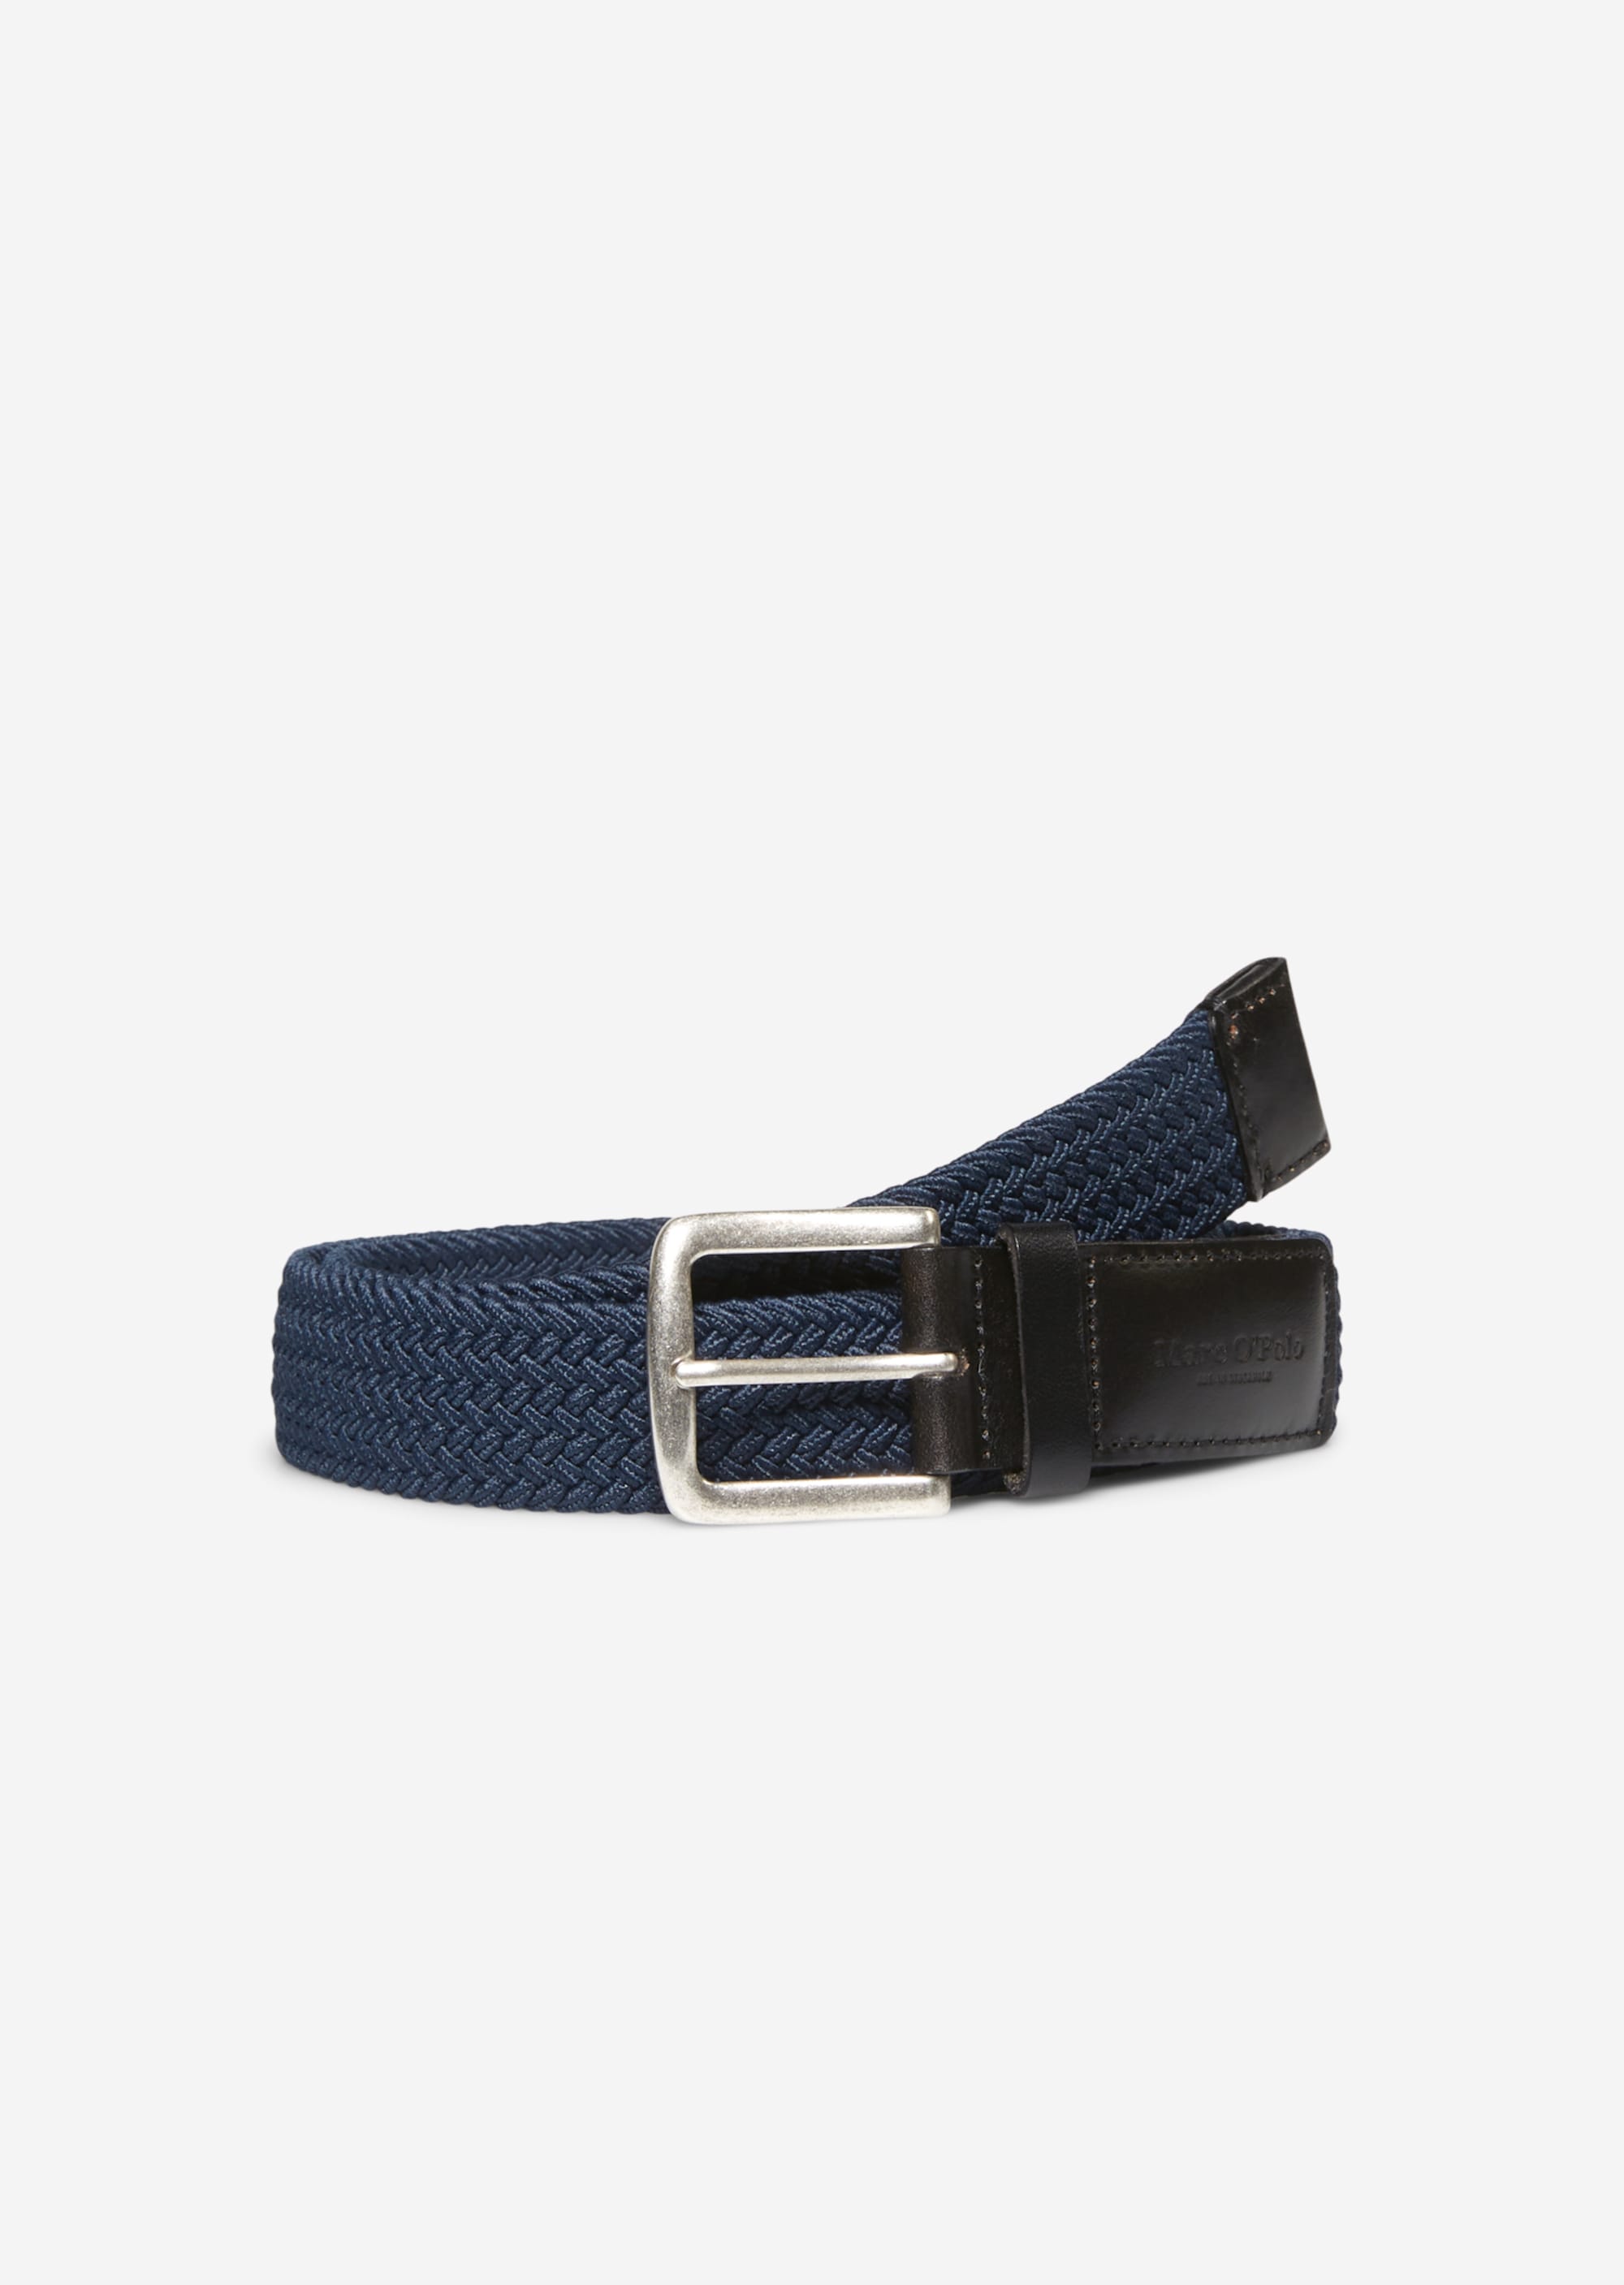 Braided belt pinot noir